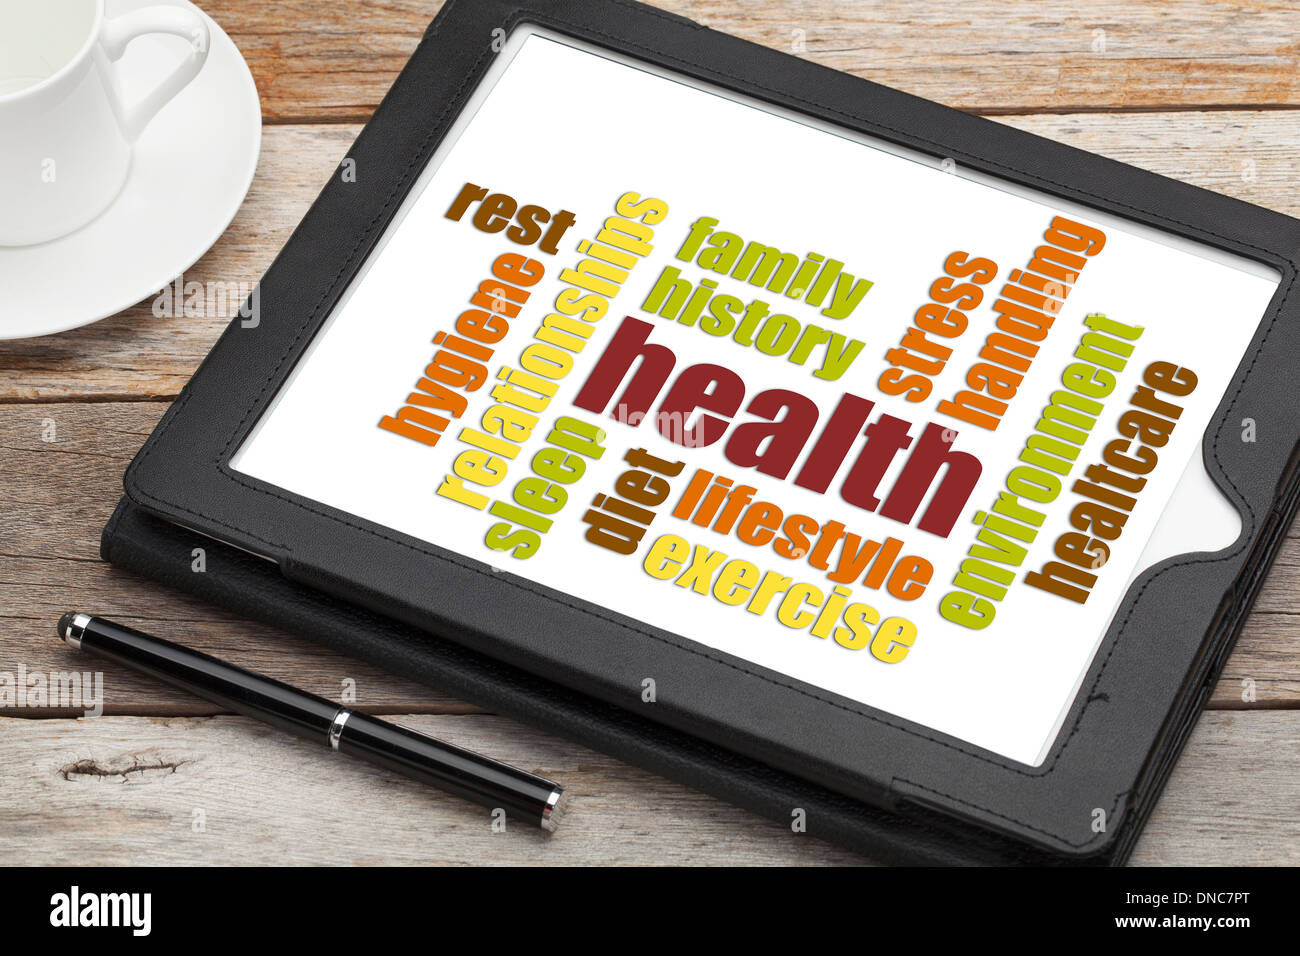 Gesundheit Konzept Wortwolke auf einem Bildschirm von digital-Tablette Stockfoto